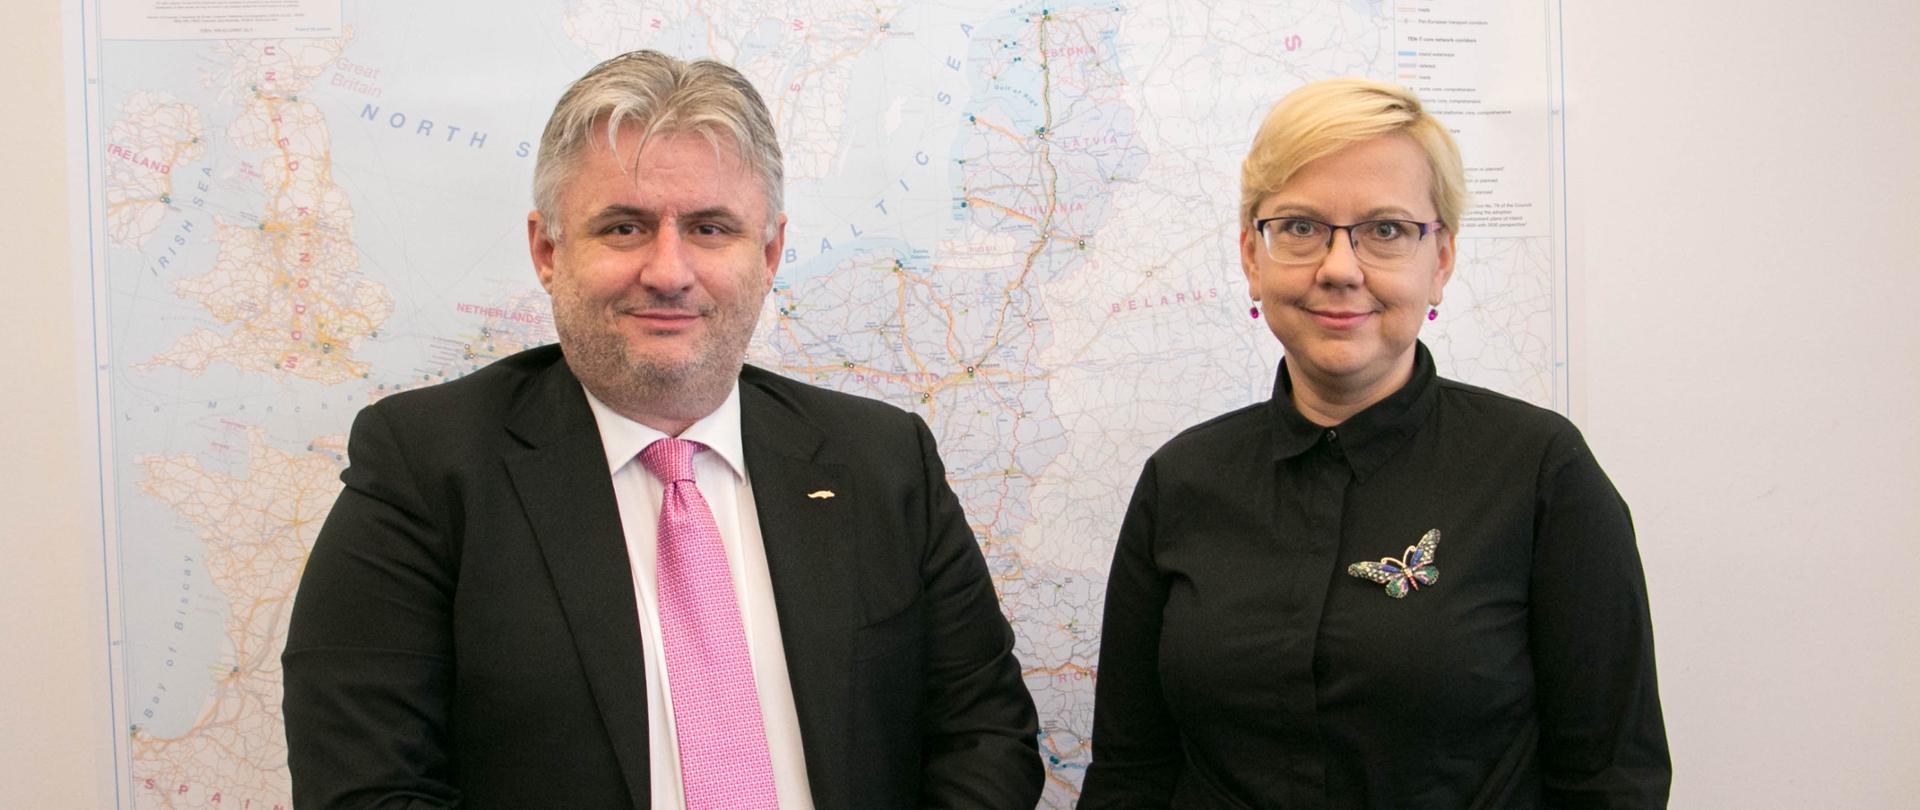 Dragos Virgil Titea, sekretarz stanu w Ministerstwie Transportu Rumunii (po lewej), Anna Moskwa, podsekretarz stanu w polskim Ministerstwie Gospodarki Morskiej i Żeglugi Śródlądowej